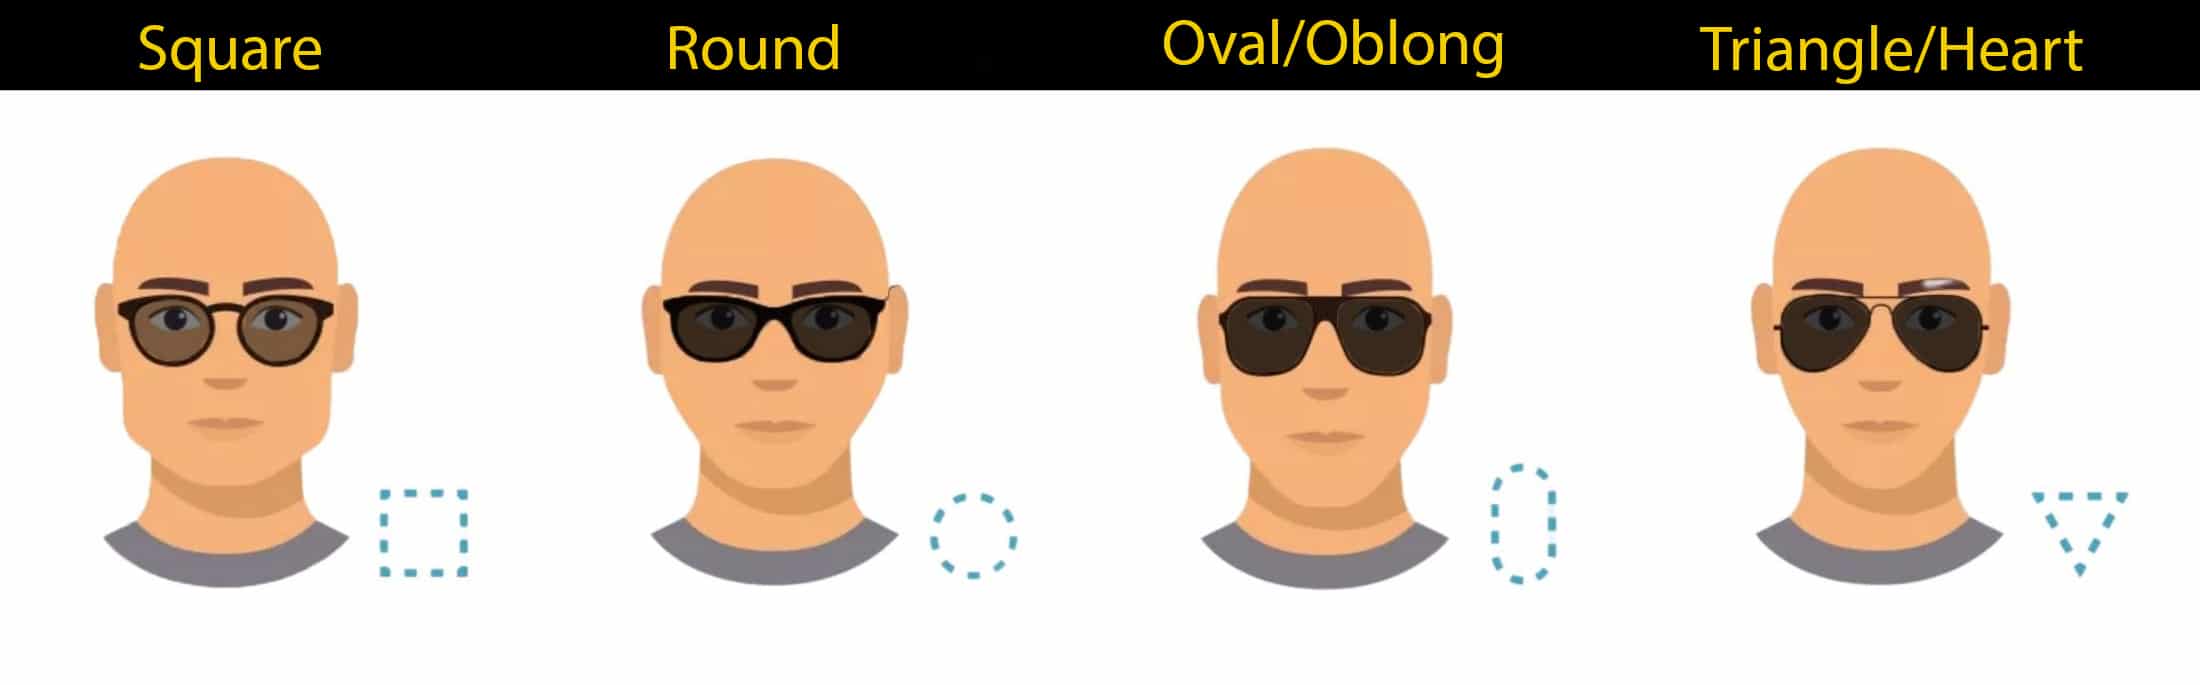 bald-face-shapes-men-sunglasses-style